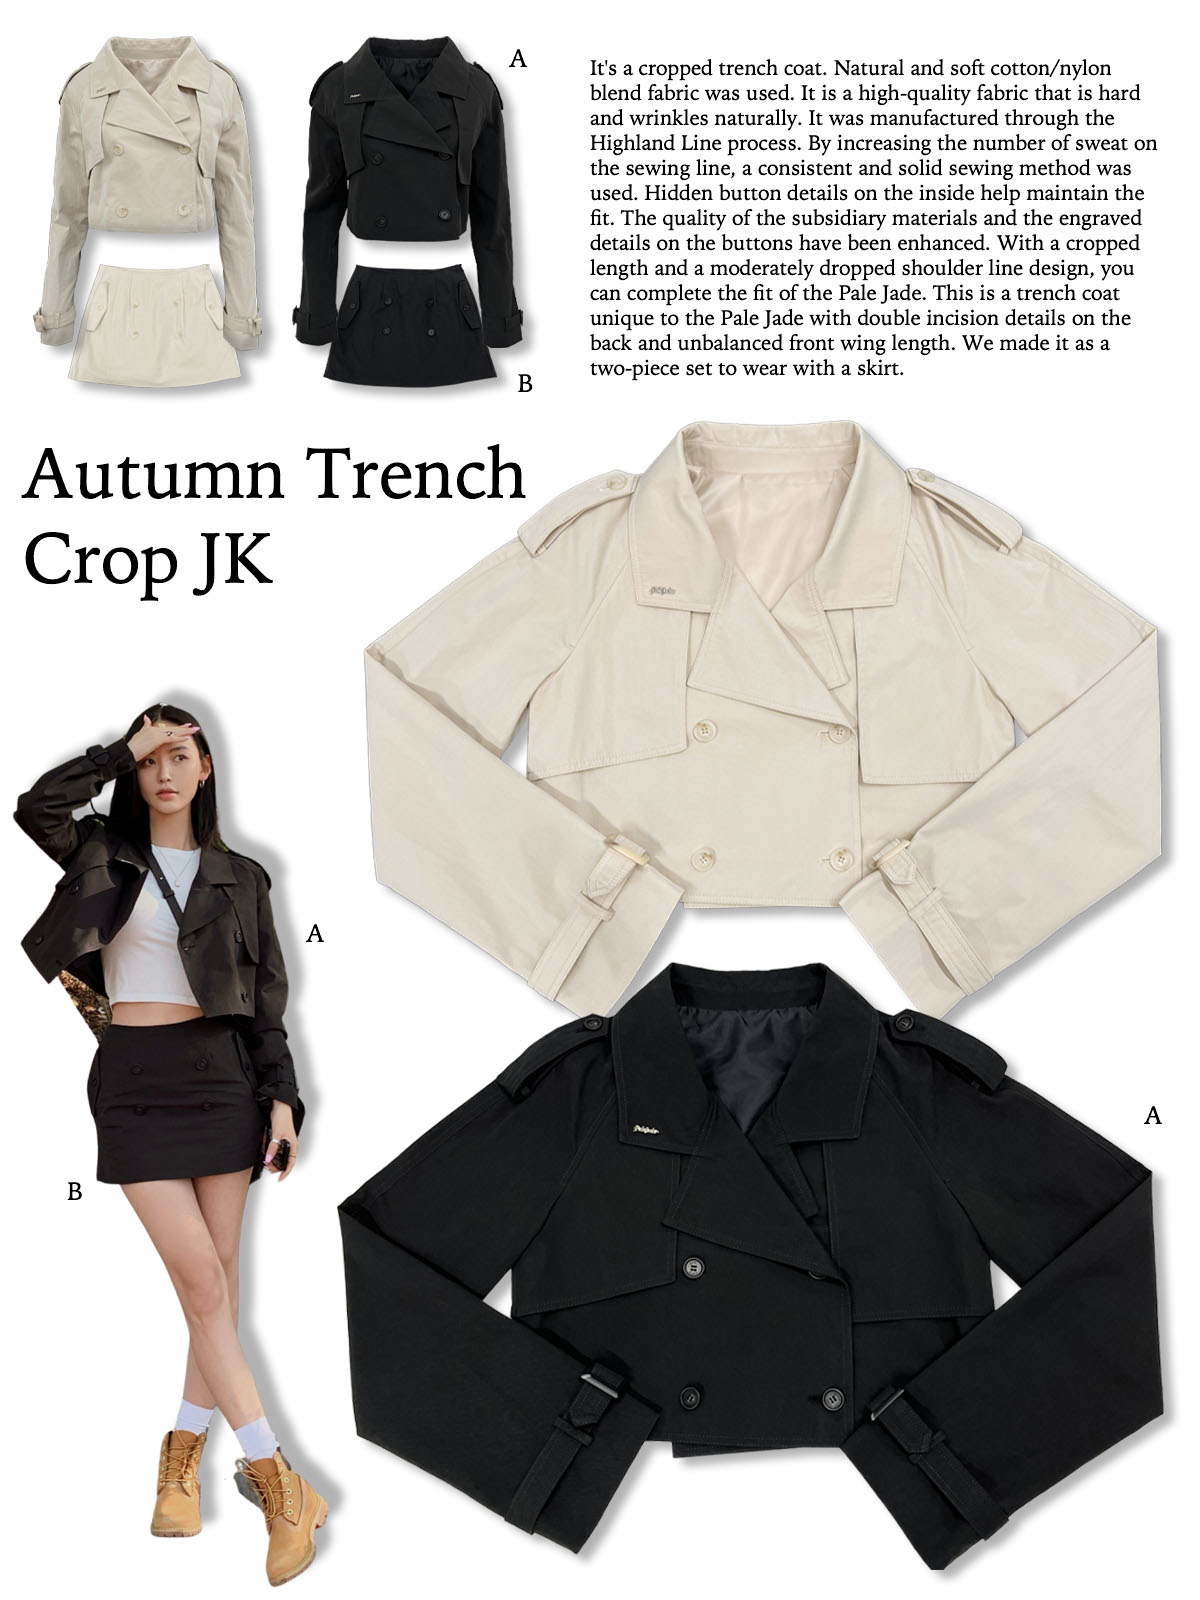 Autumn Trench Crop JK